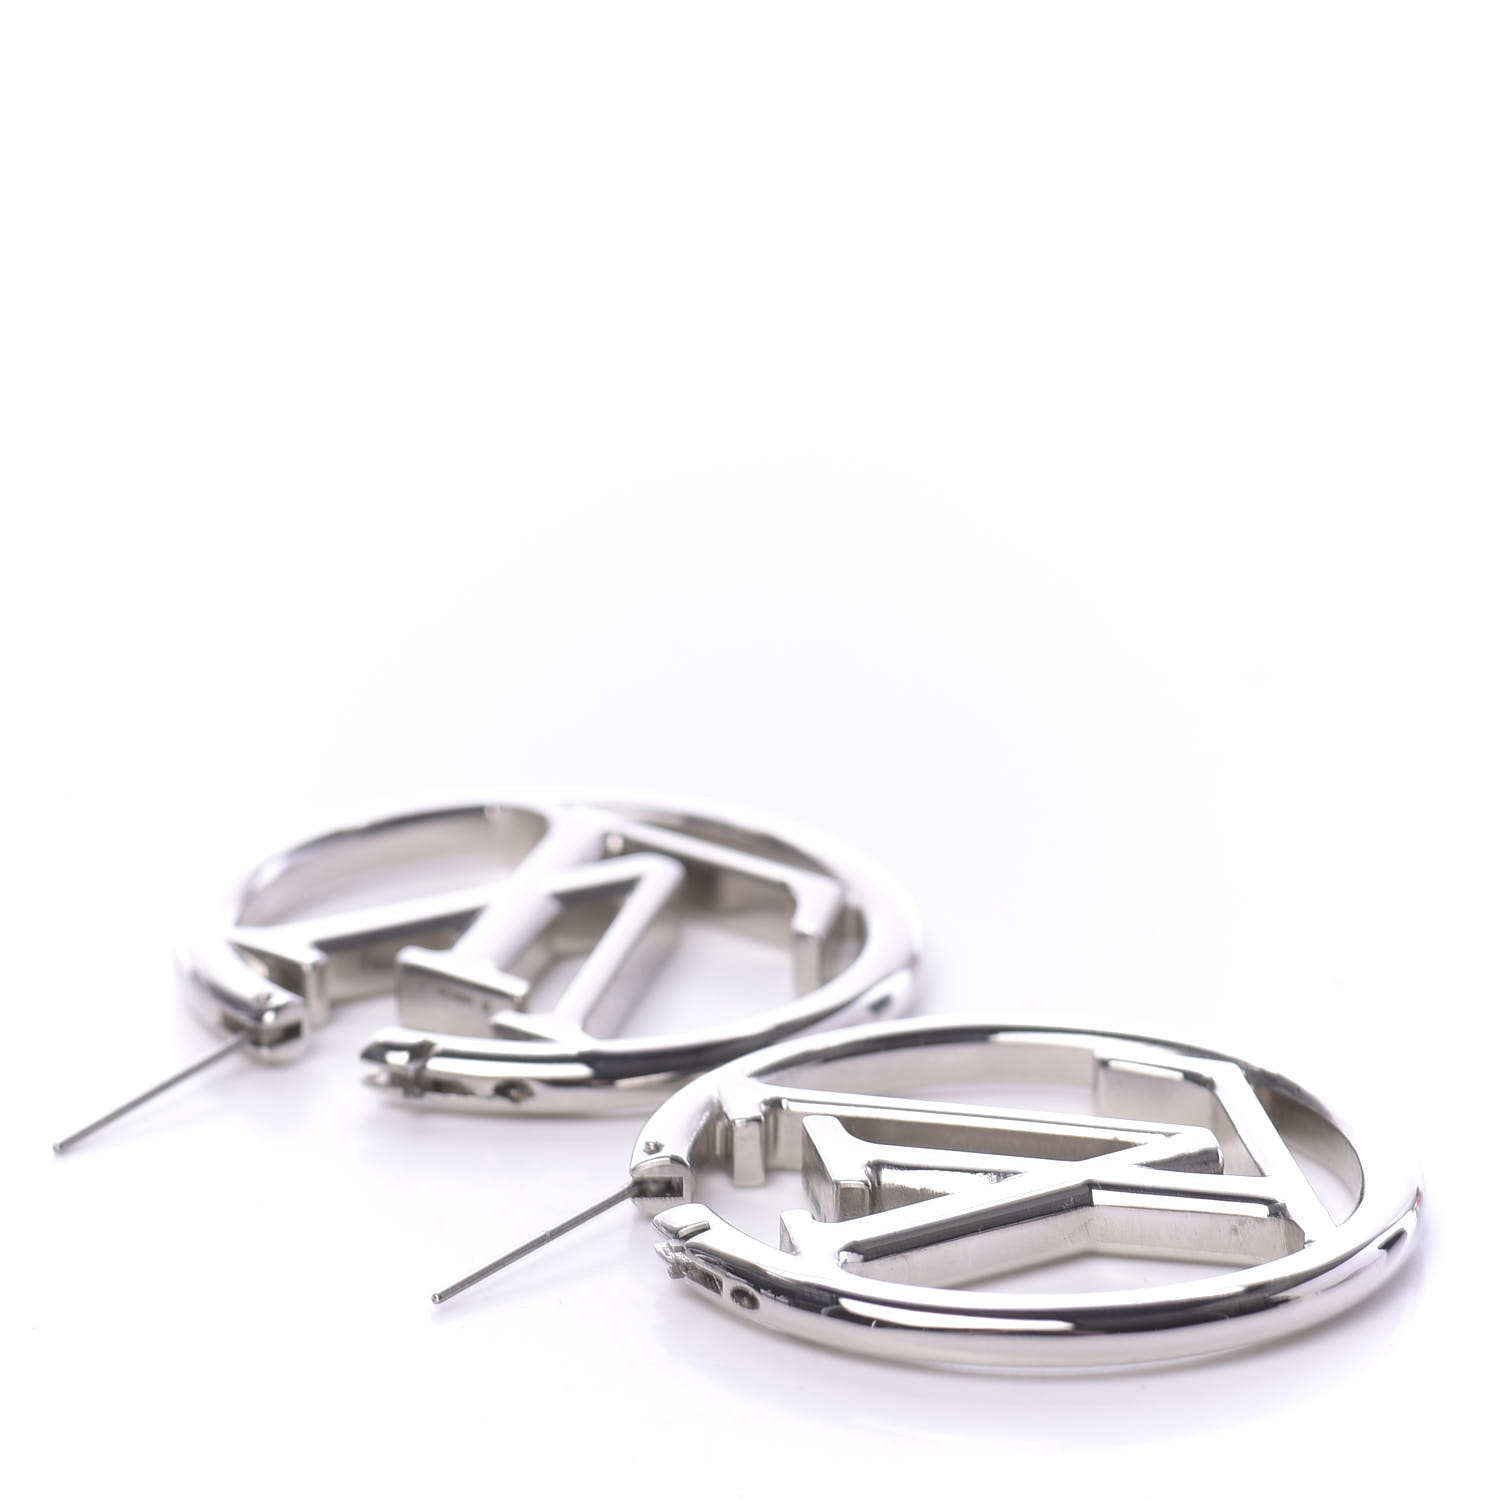 Louise earrings Louis Vuitton Silver in Metal - 31847263